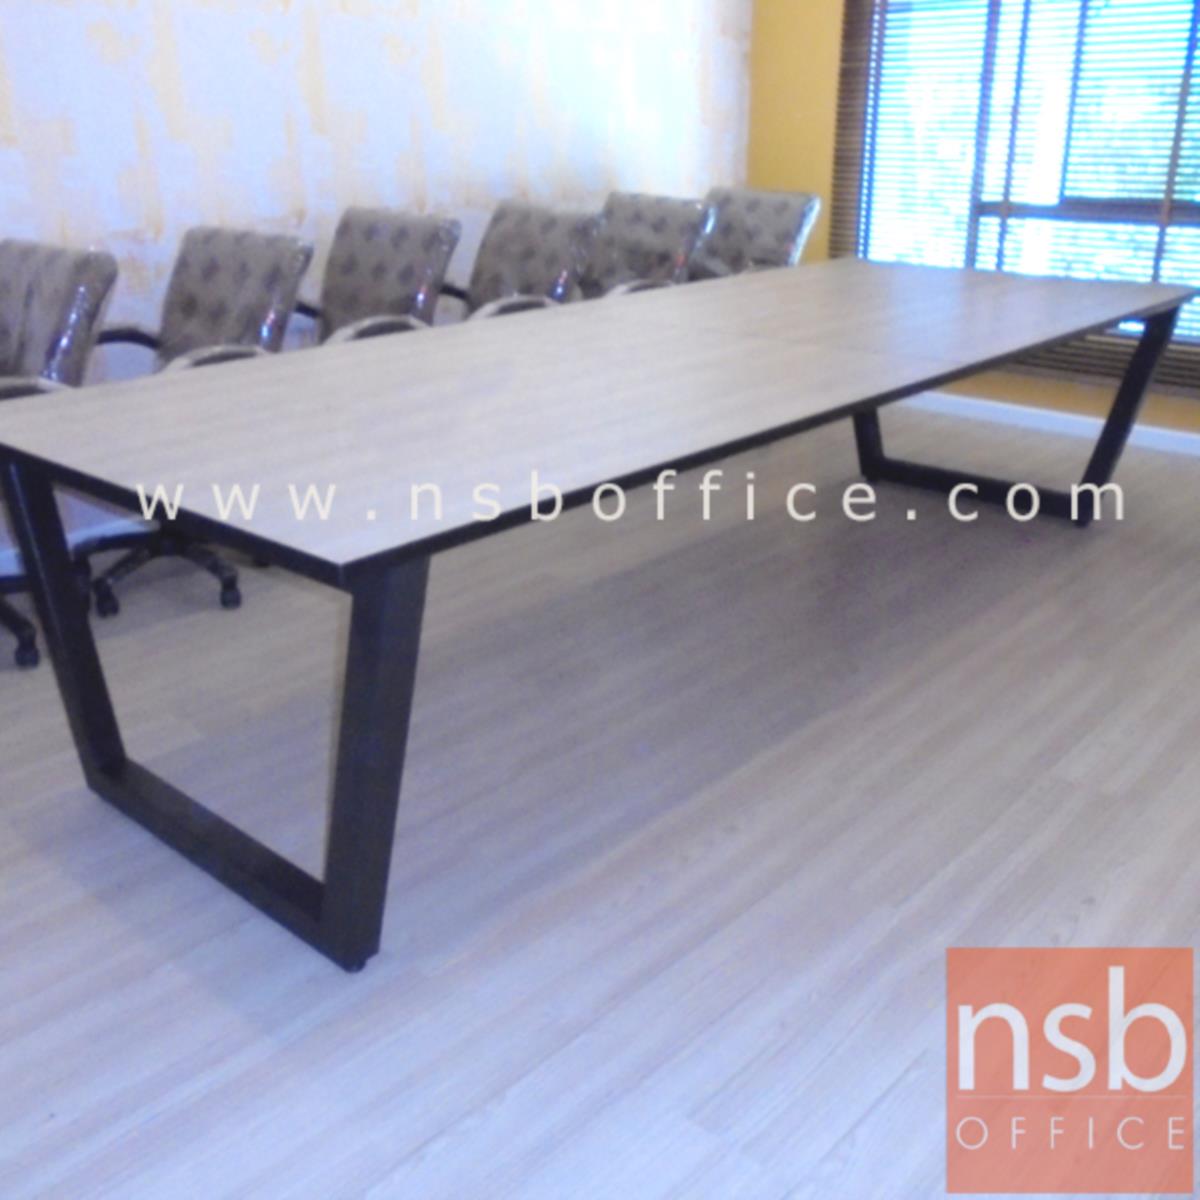 โต๊ะประชุมทรงสี่เหลี่ยม  ขนาด 200W, 240W, 300W, 360W, 400W cm.  ขาเหล็กทรงคางหมู